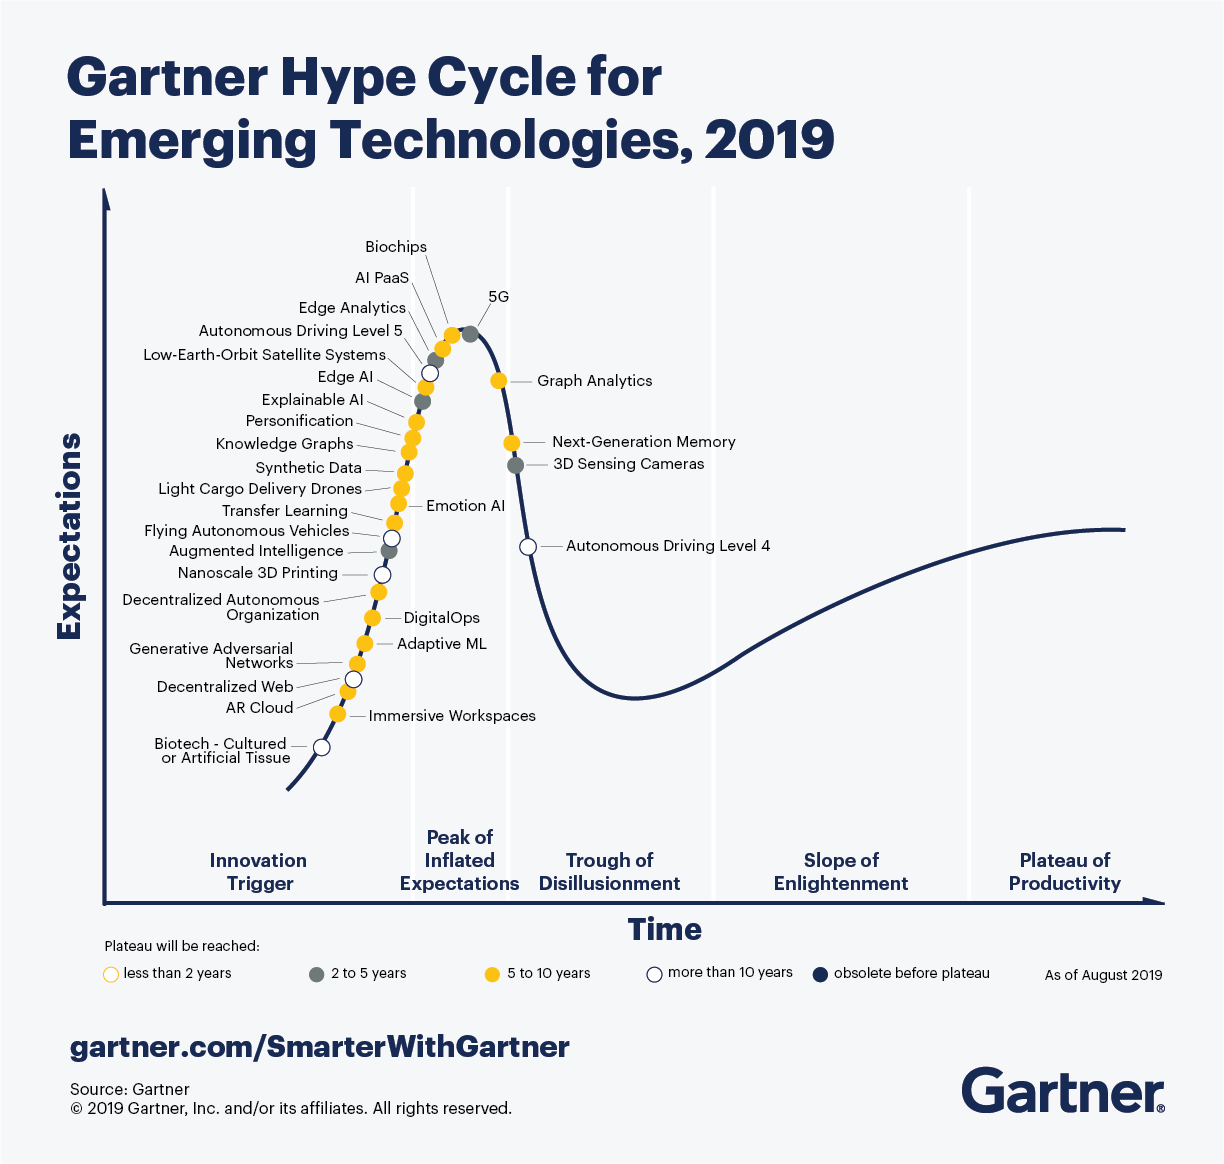 gartner-hypecycle-for-emerging-technologies-2019